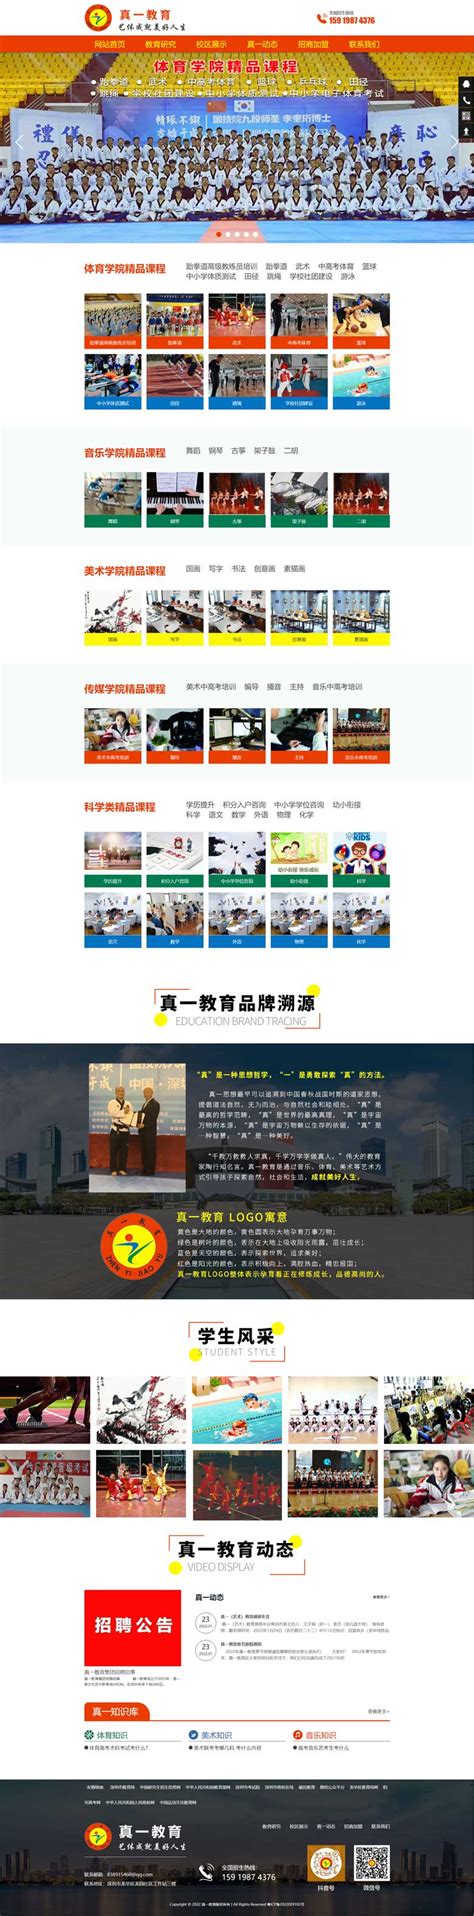 珠海网站建设/高端网站定制-案例之真一教育-深圳创想互联网络营销有限公司